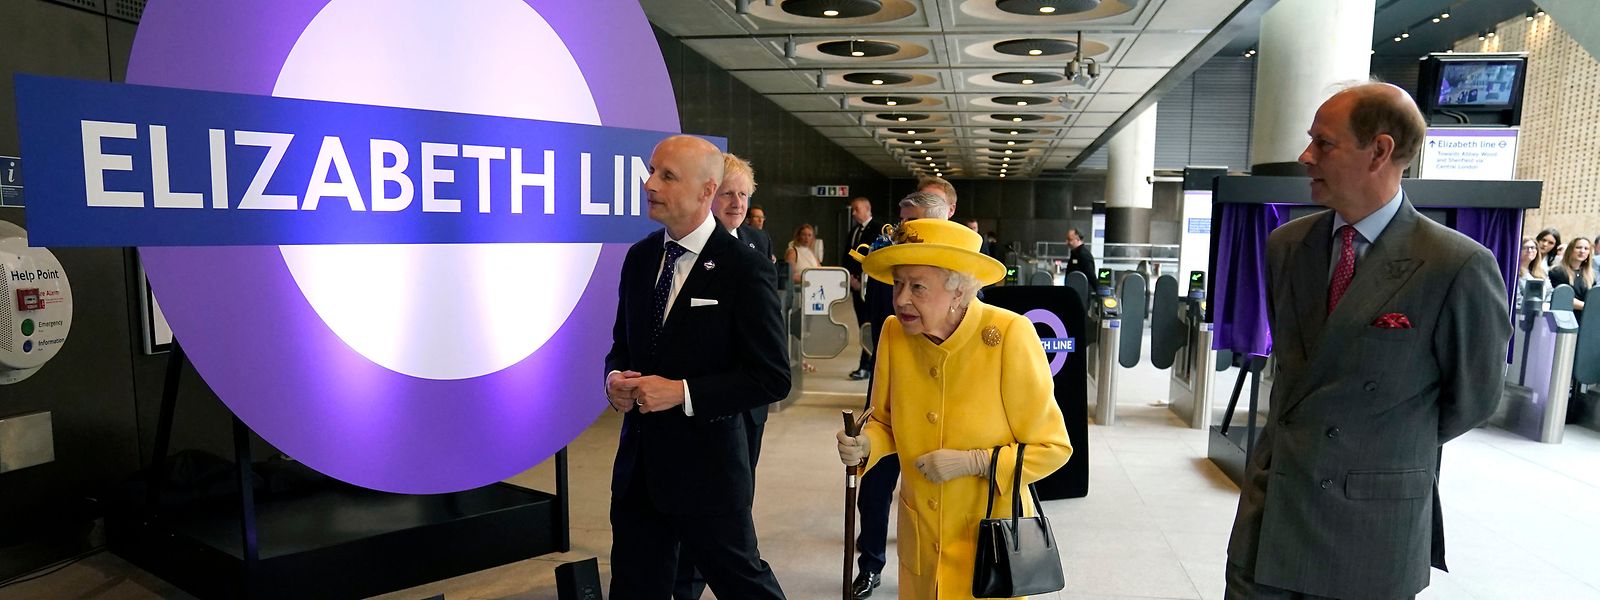 In strahlendes Gelb gekleidet, hat Ihre Majestät persönlich die Elizabeth Line für eröffnet erklärt. 